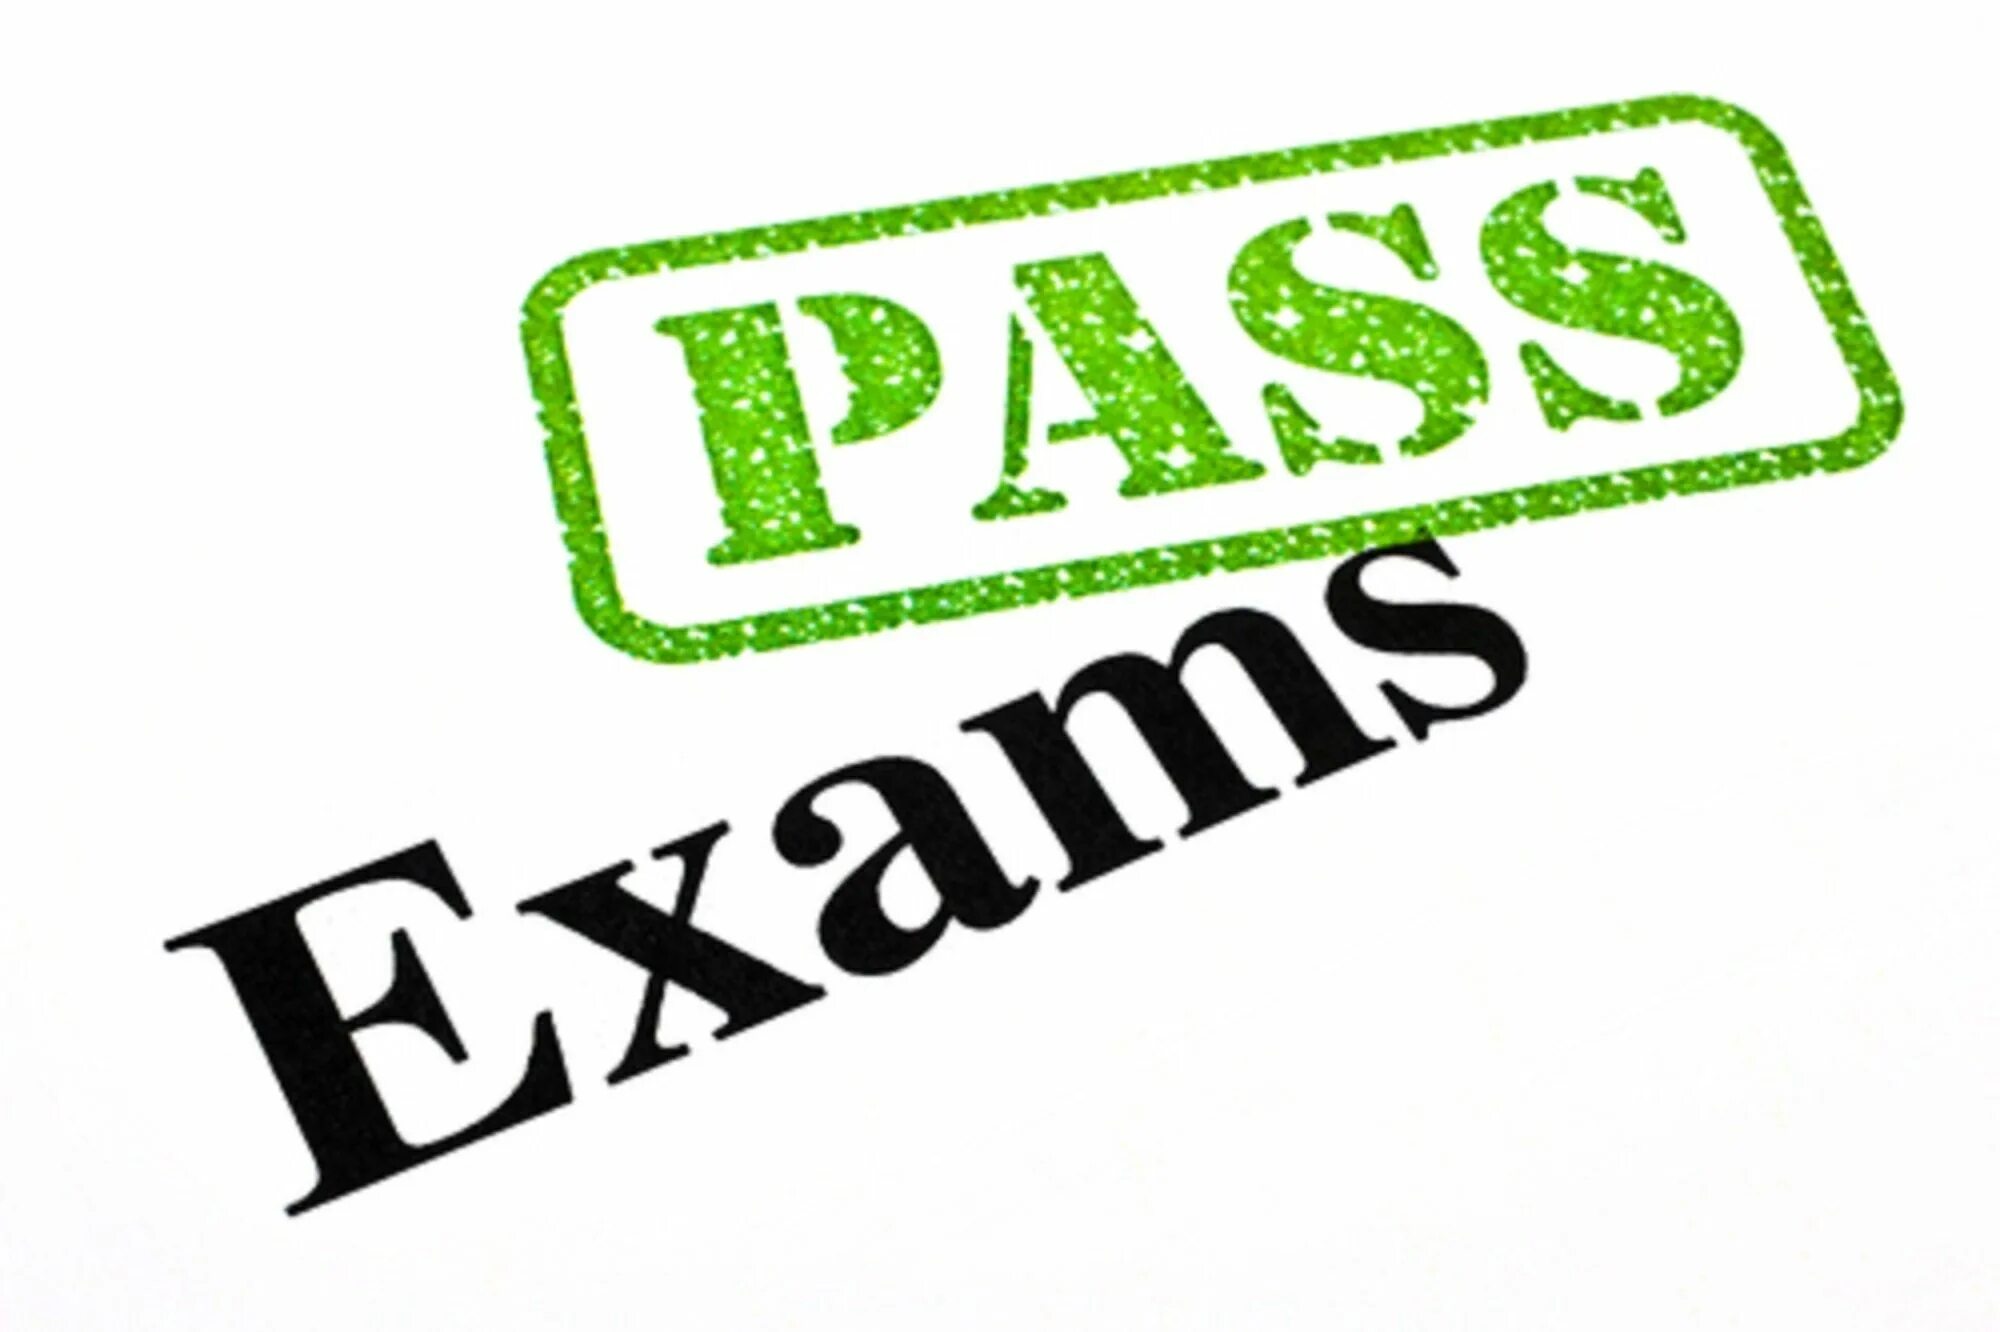 She won t pass the exam. Pass Exam. Passing Exams. The Exam is Passed. To Pass an Exam.